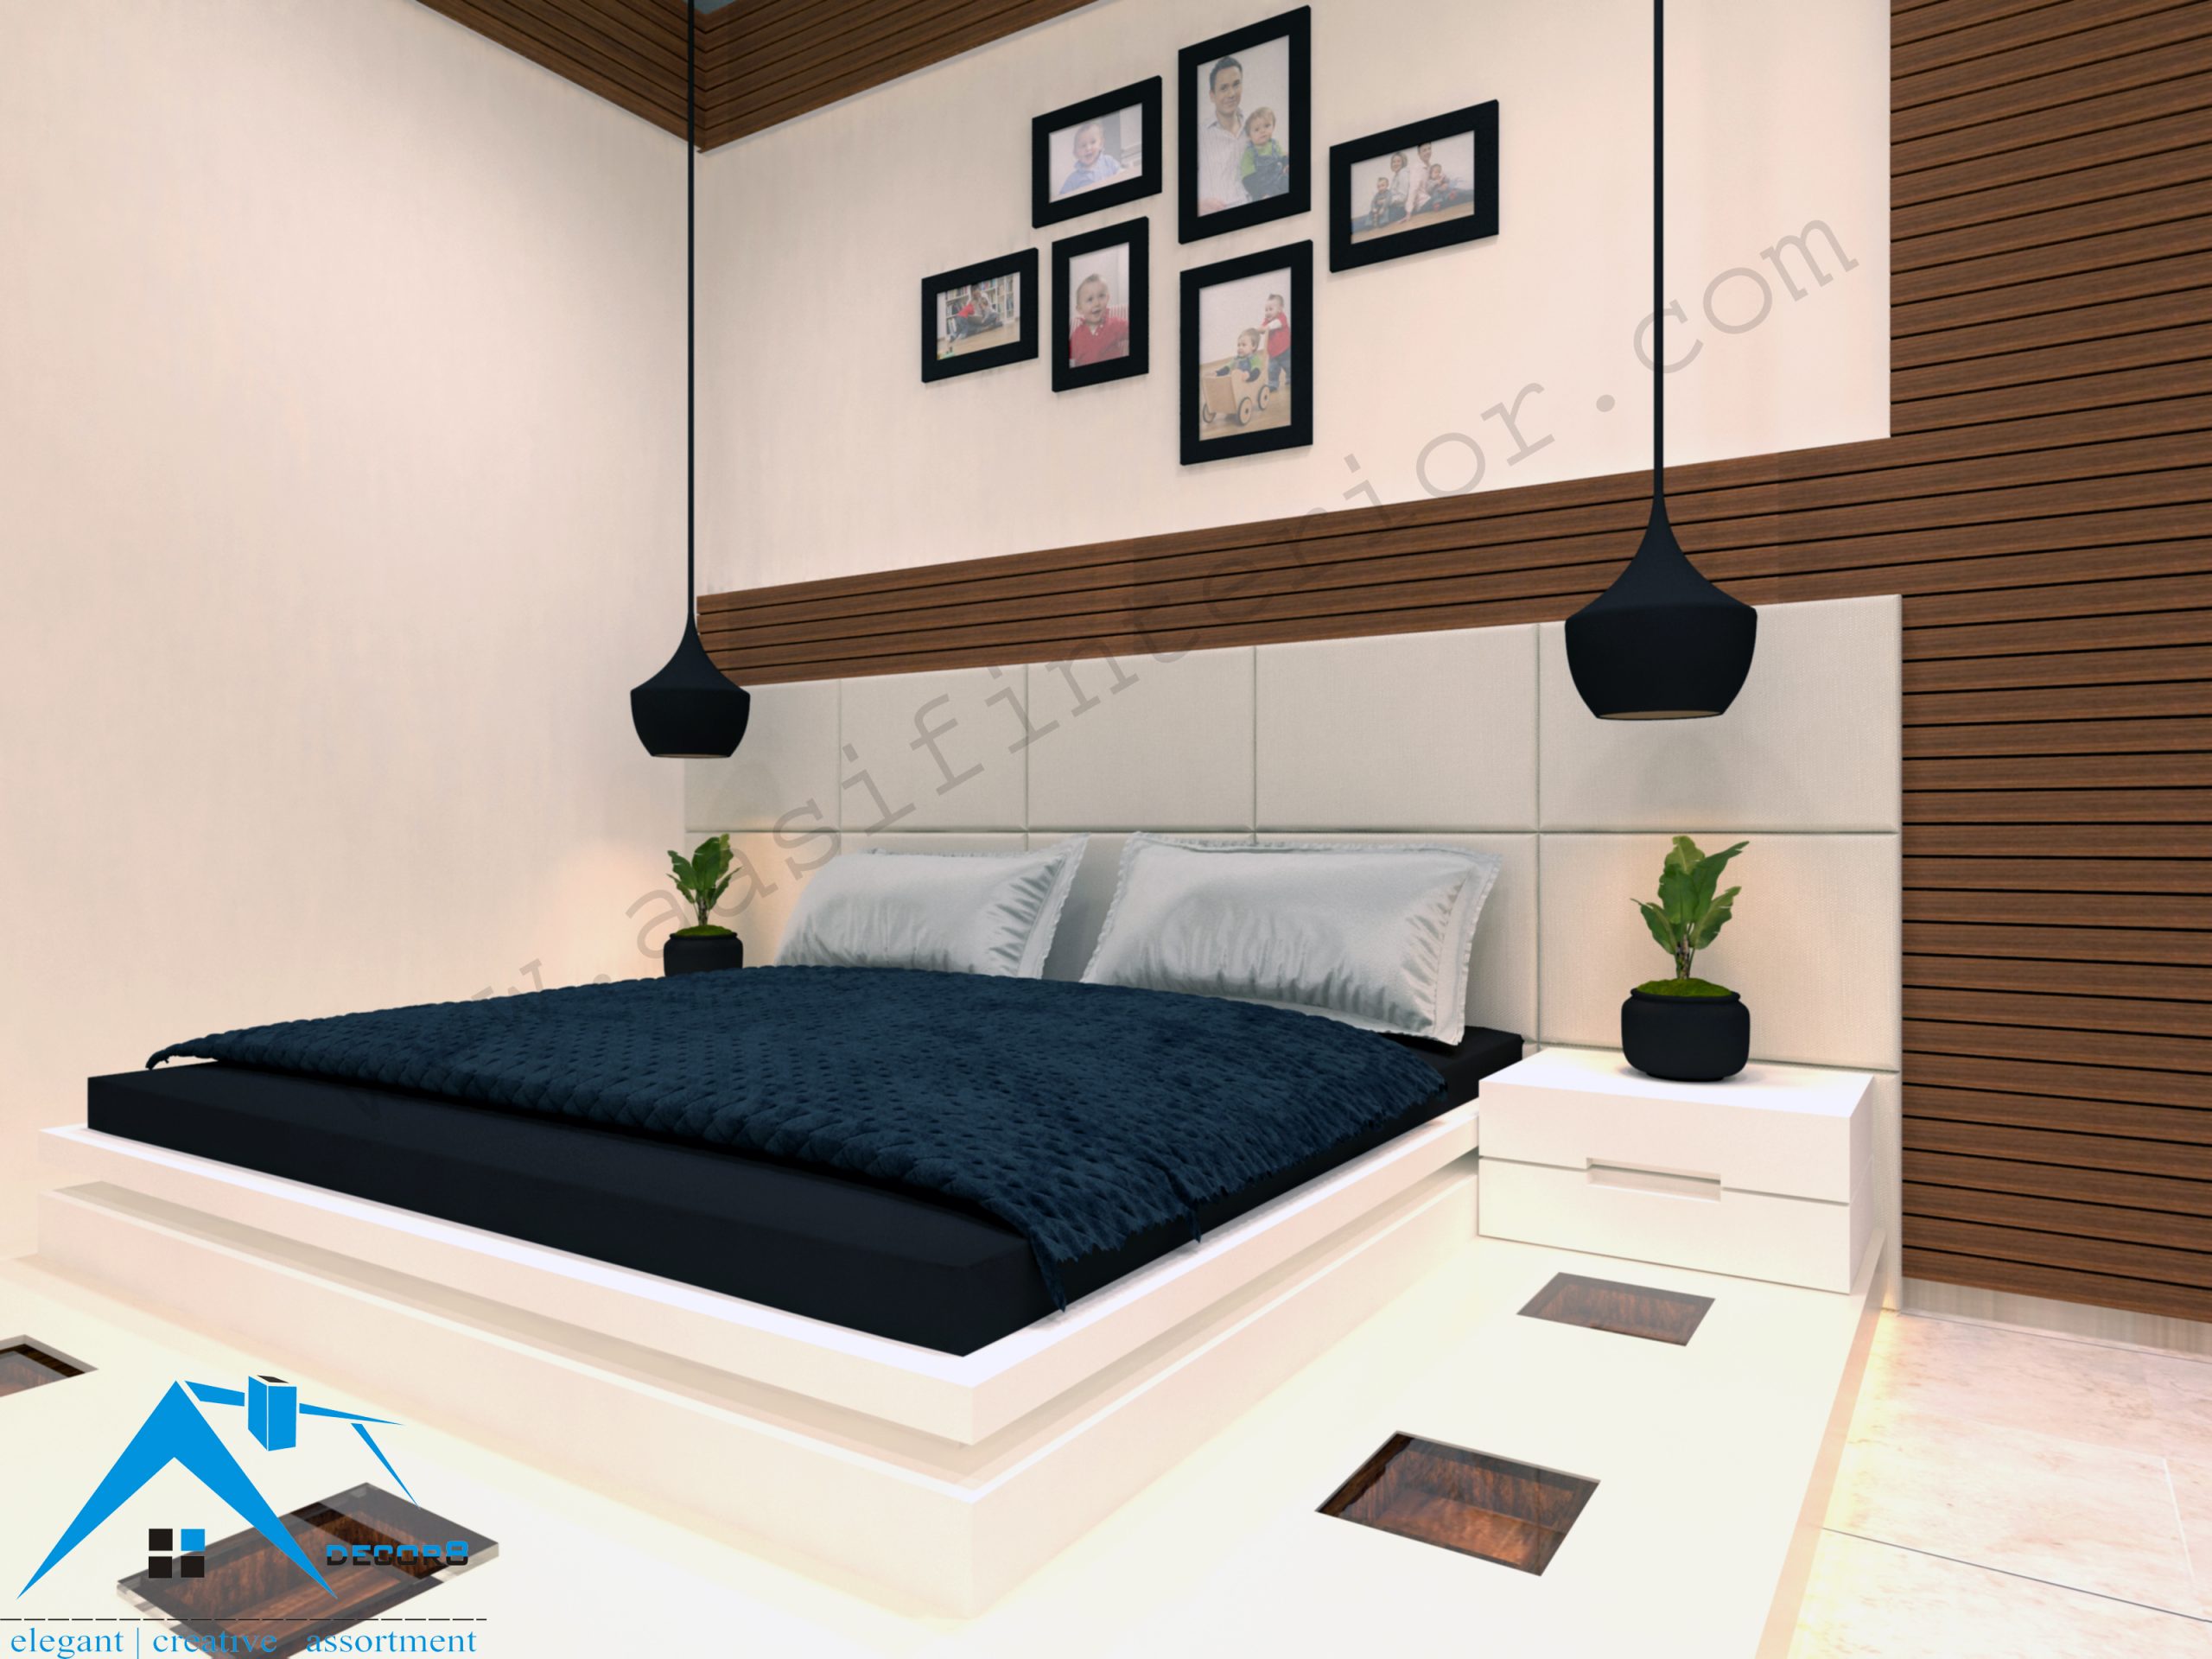 Bedroom Decorating Ideas – decor8 Interior Designer